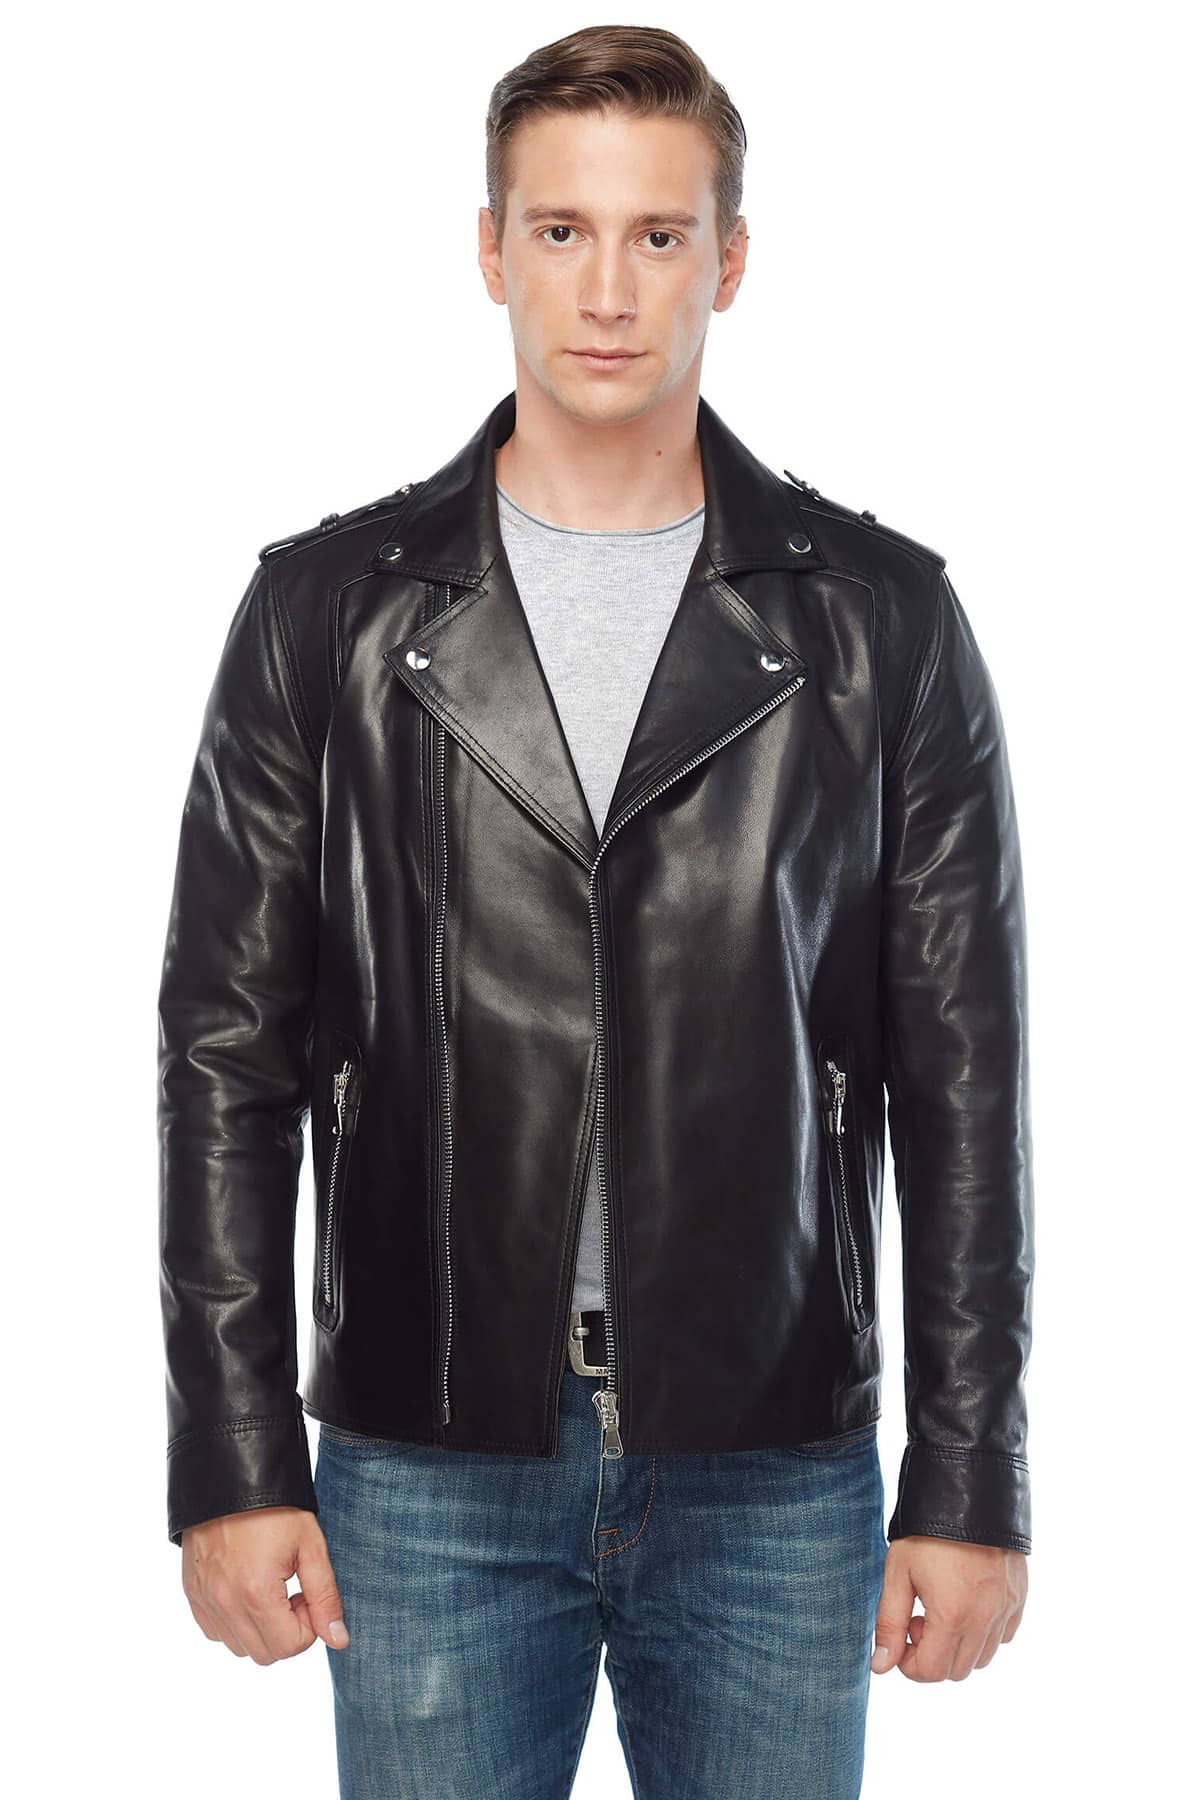 Hugh Dancy Biker Genuine Leather Jacket Black2